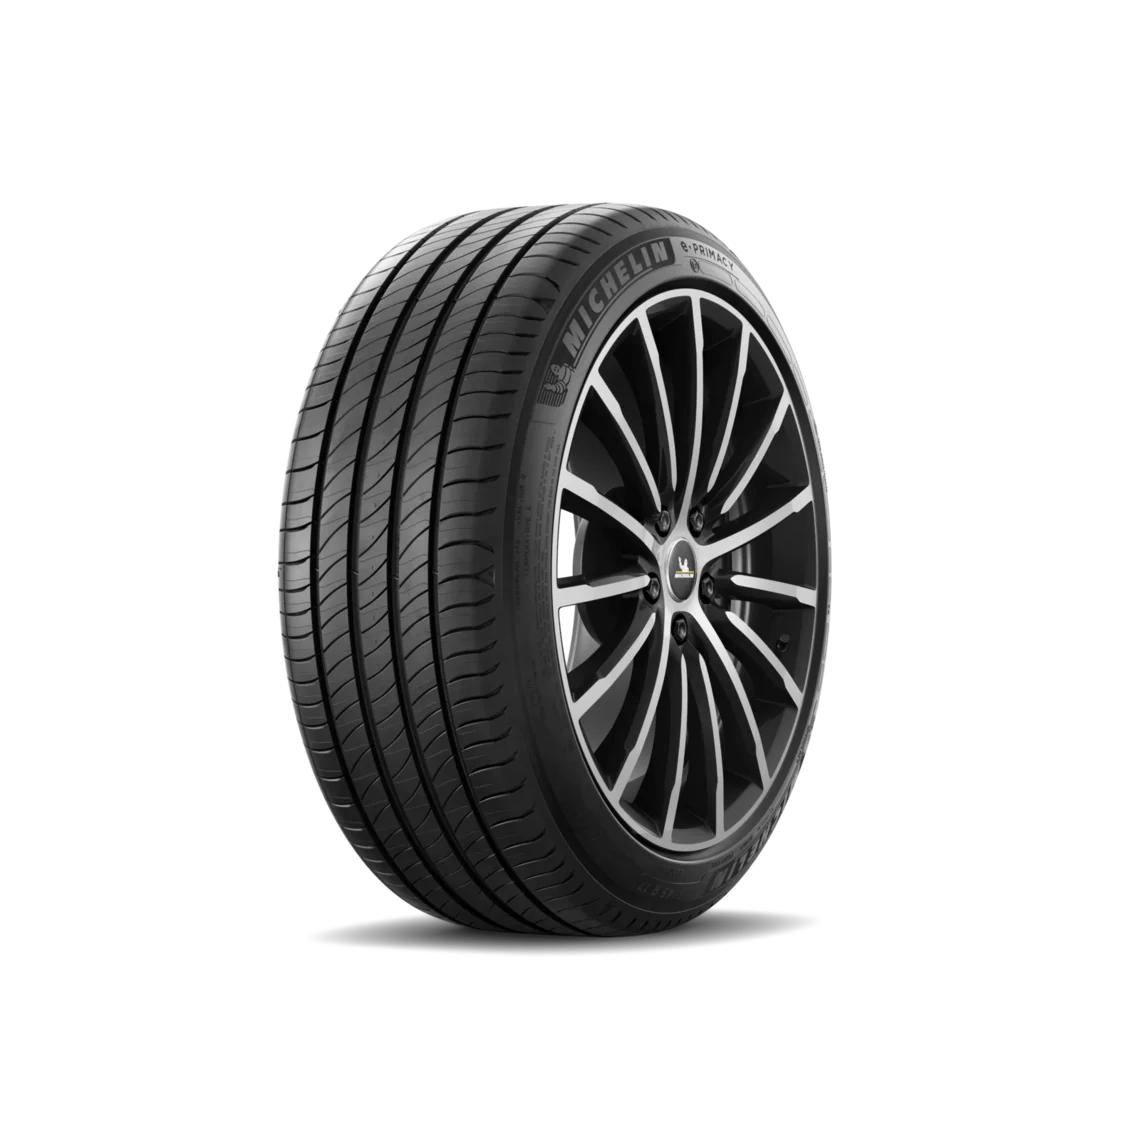 Michelin Michelin 205/55 R16 94H E PRIMACY XL pneumatici nuovi Estivo 